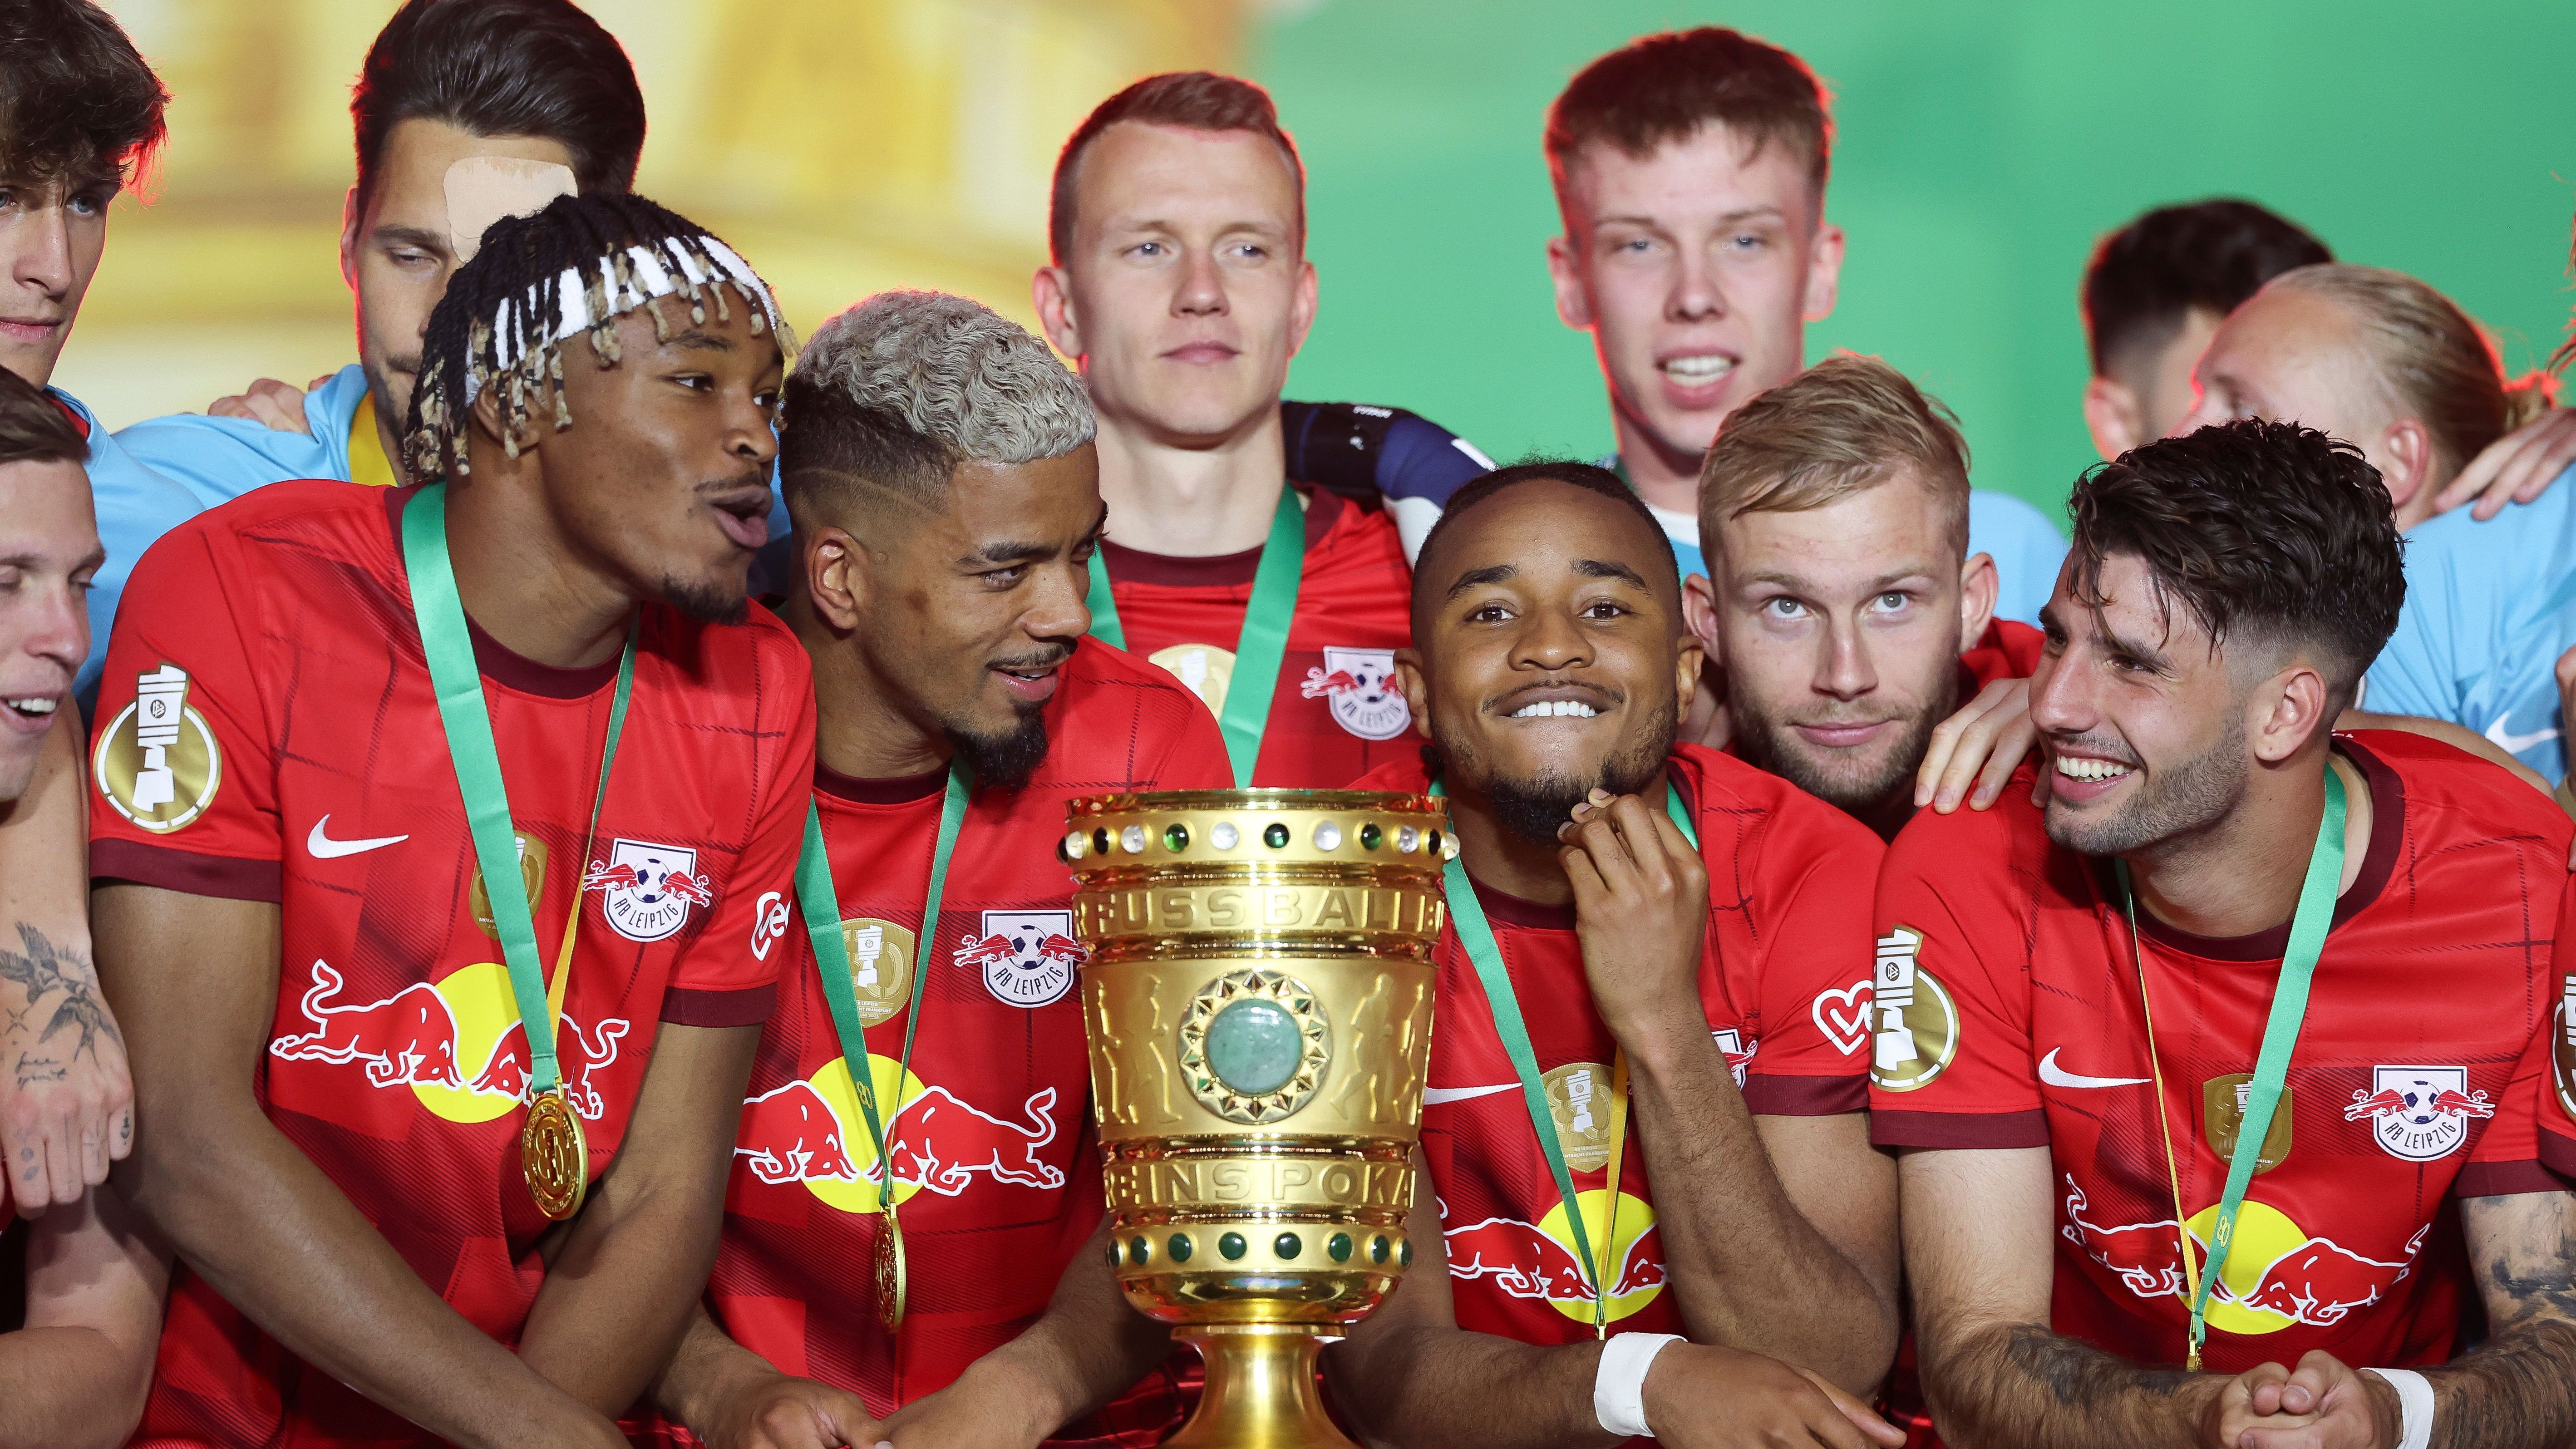 <strong>DFB-Pokal: Die längsten Siegesserien</strong><br>RB Leipzig hat durch die Pokalsiege in den vergangenen zwei Spielzeiten und den jüngsten Sieg in der 1. Pokalrunde insgesamt 13 Pokalspiele in Folge gewonnen. Damit stehen die "Roten Bullen" in den Top-10 der längsten Siegesserien im DFB-Pokal. <strong><em>ran</em></strong> verrät, welche Vereine noch häufiger in Folge gewannen.